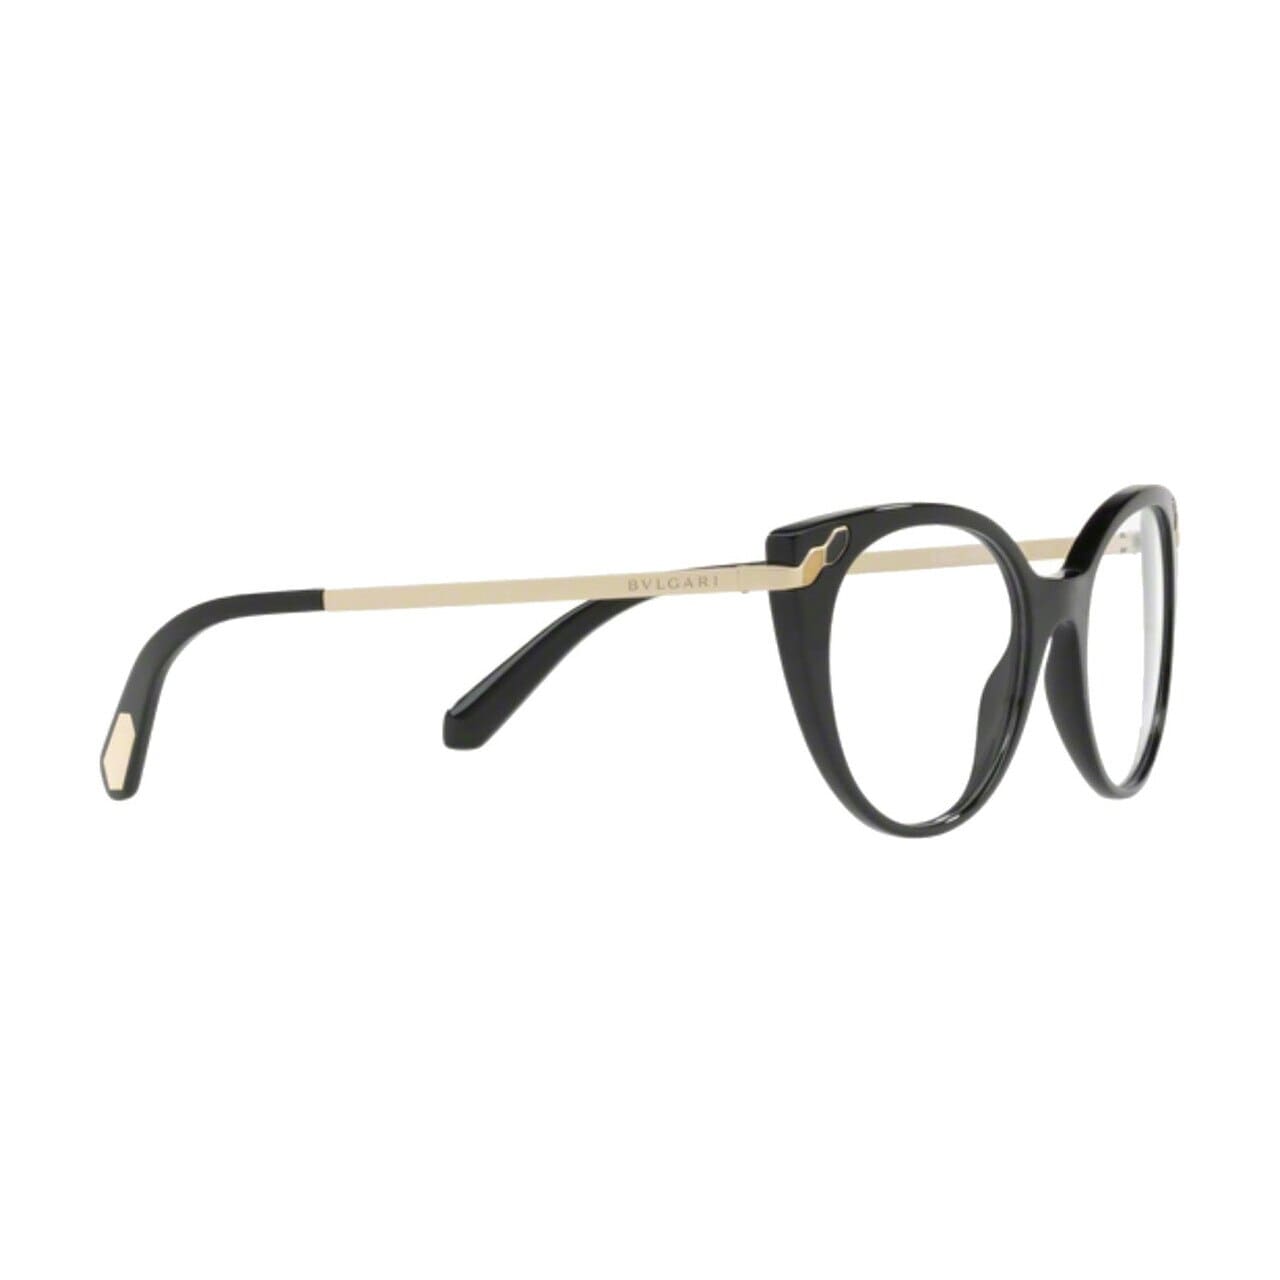 Bvlgari BV4150-501 Black Cat-Eye Women's Acetate Eyeglasses 8053672811537